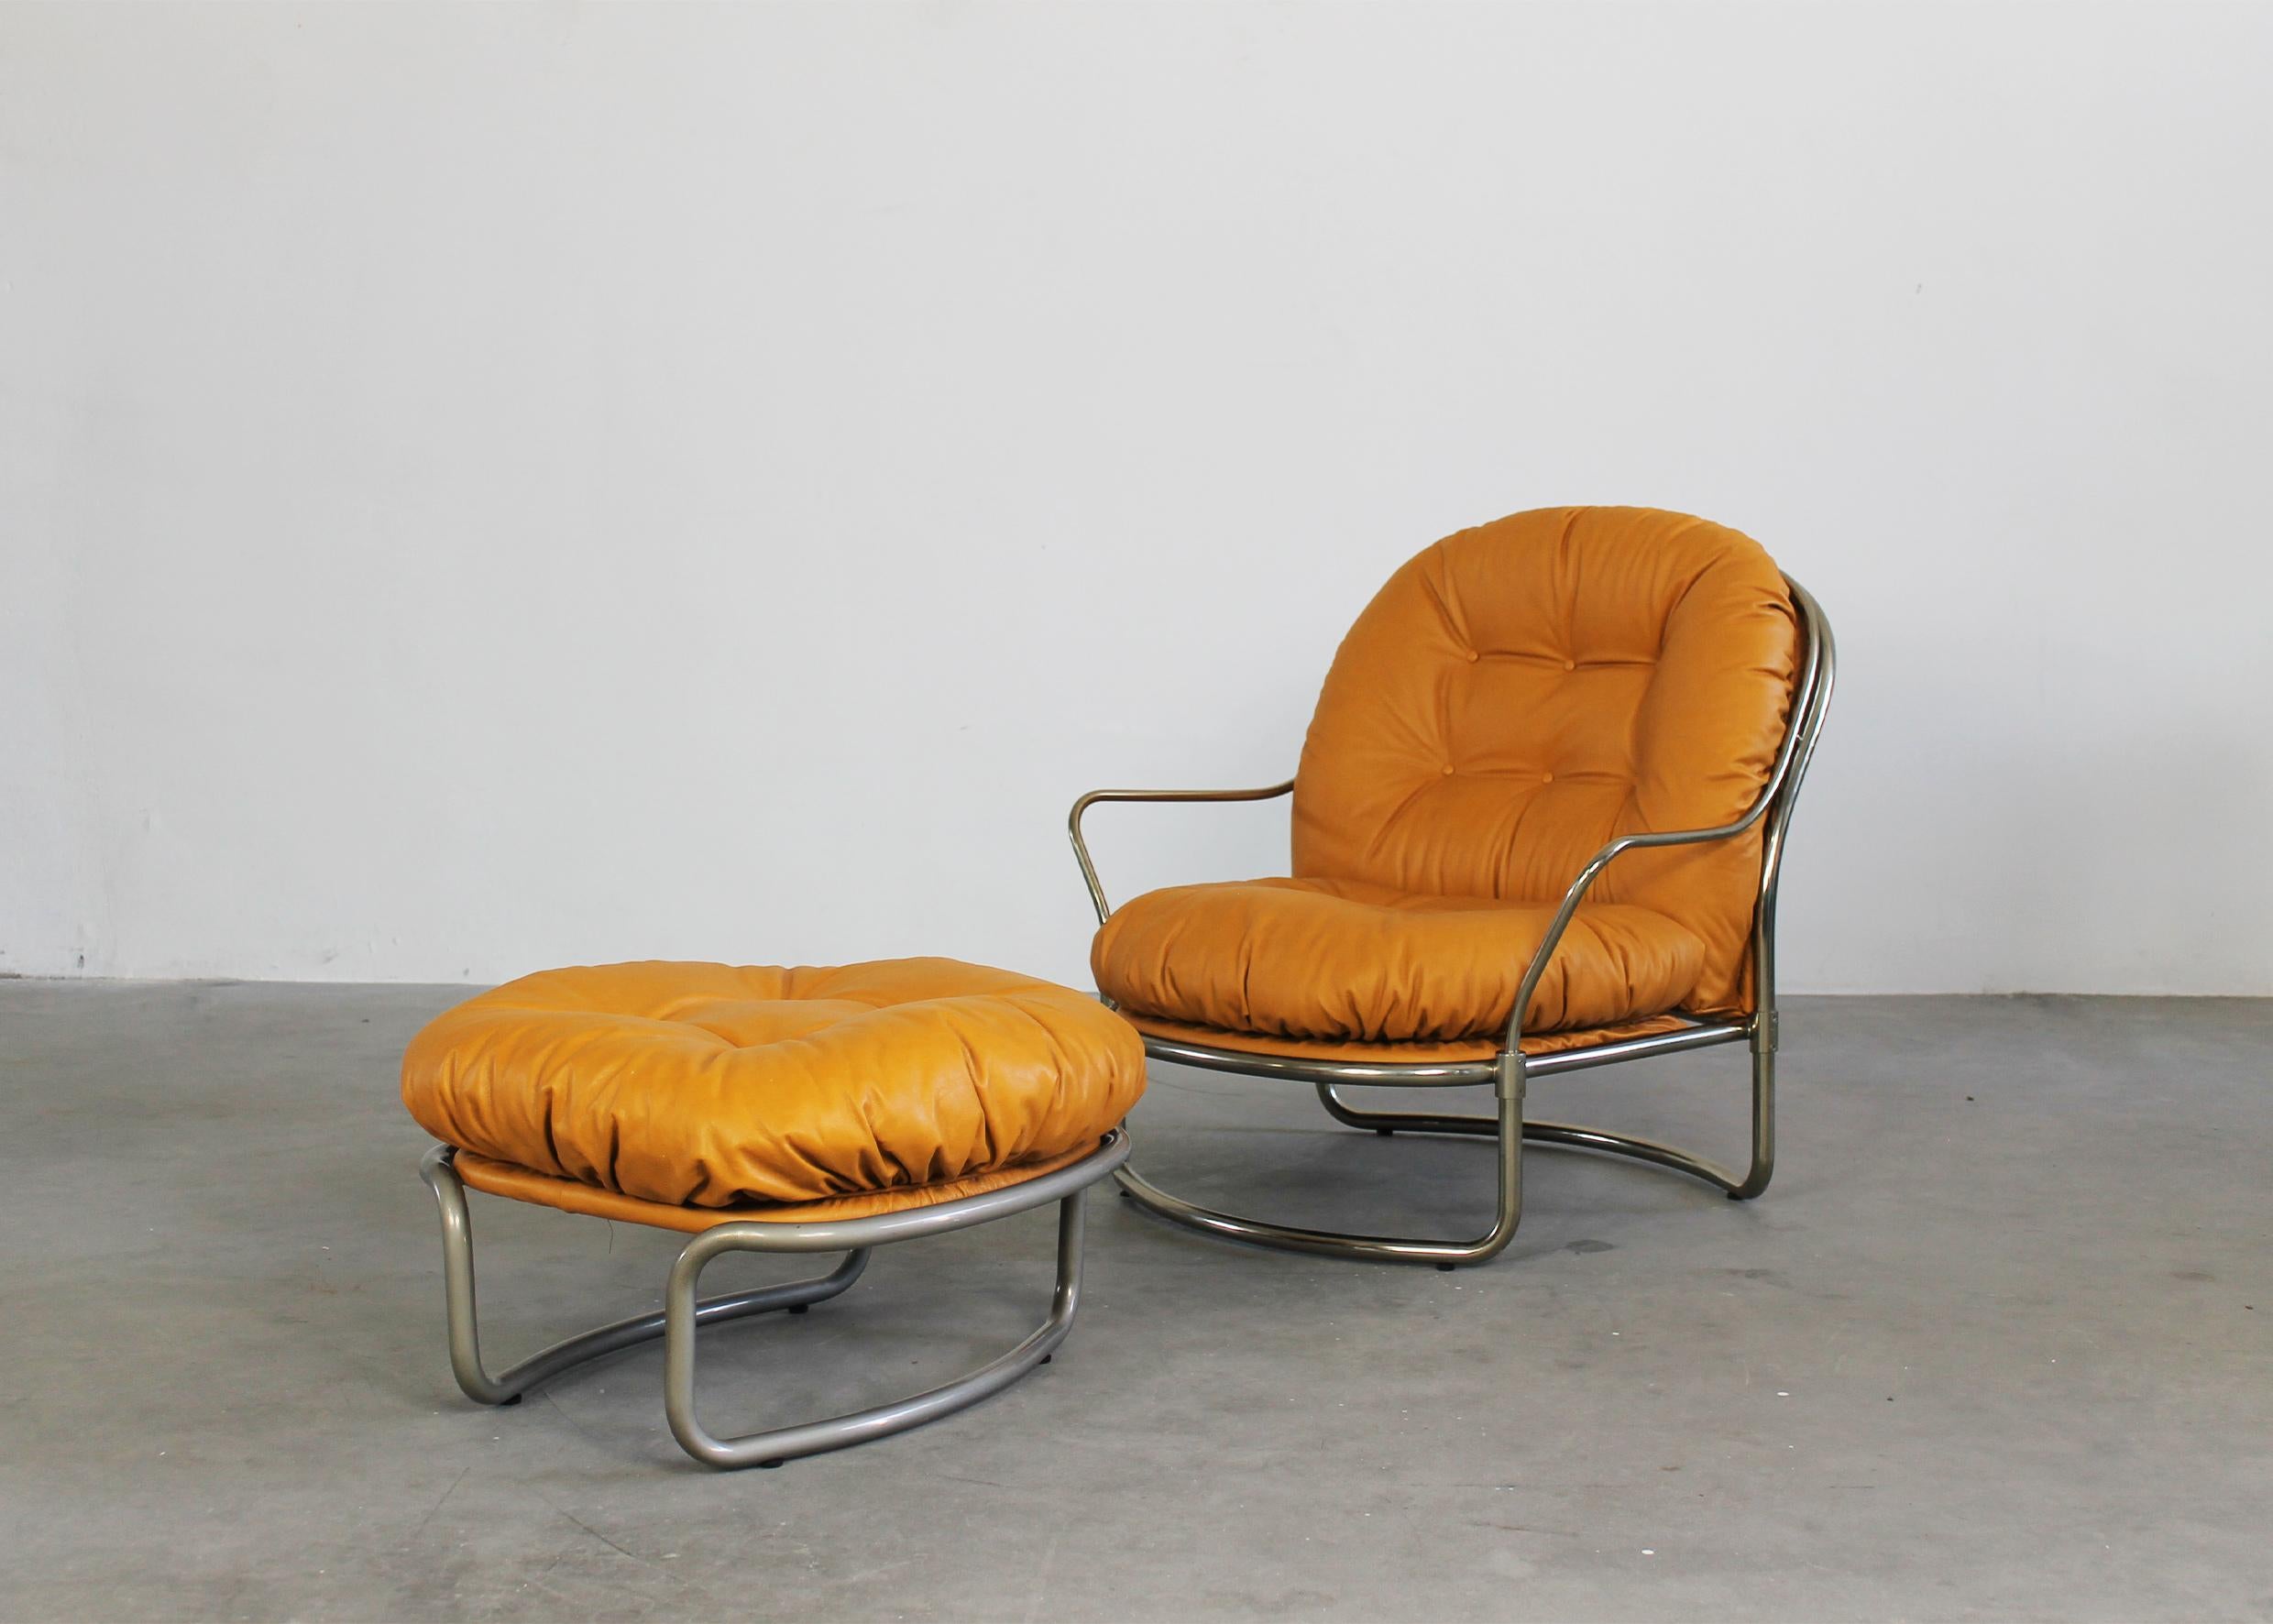 Das Set besteht aus einem Sessel 915 mit Fußstütze, beide Teile sind aus verchromtem Metall und gepolstertem Leder.
Dieses Set wurde von Carlo de Carli entworfen und von Cinova in den 1970er Jahren hergestellt.

H88x87x87 cm (Sessel)
H39x65x65 cm